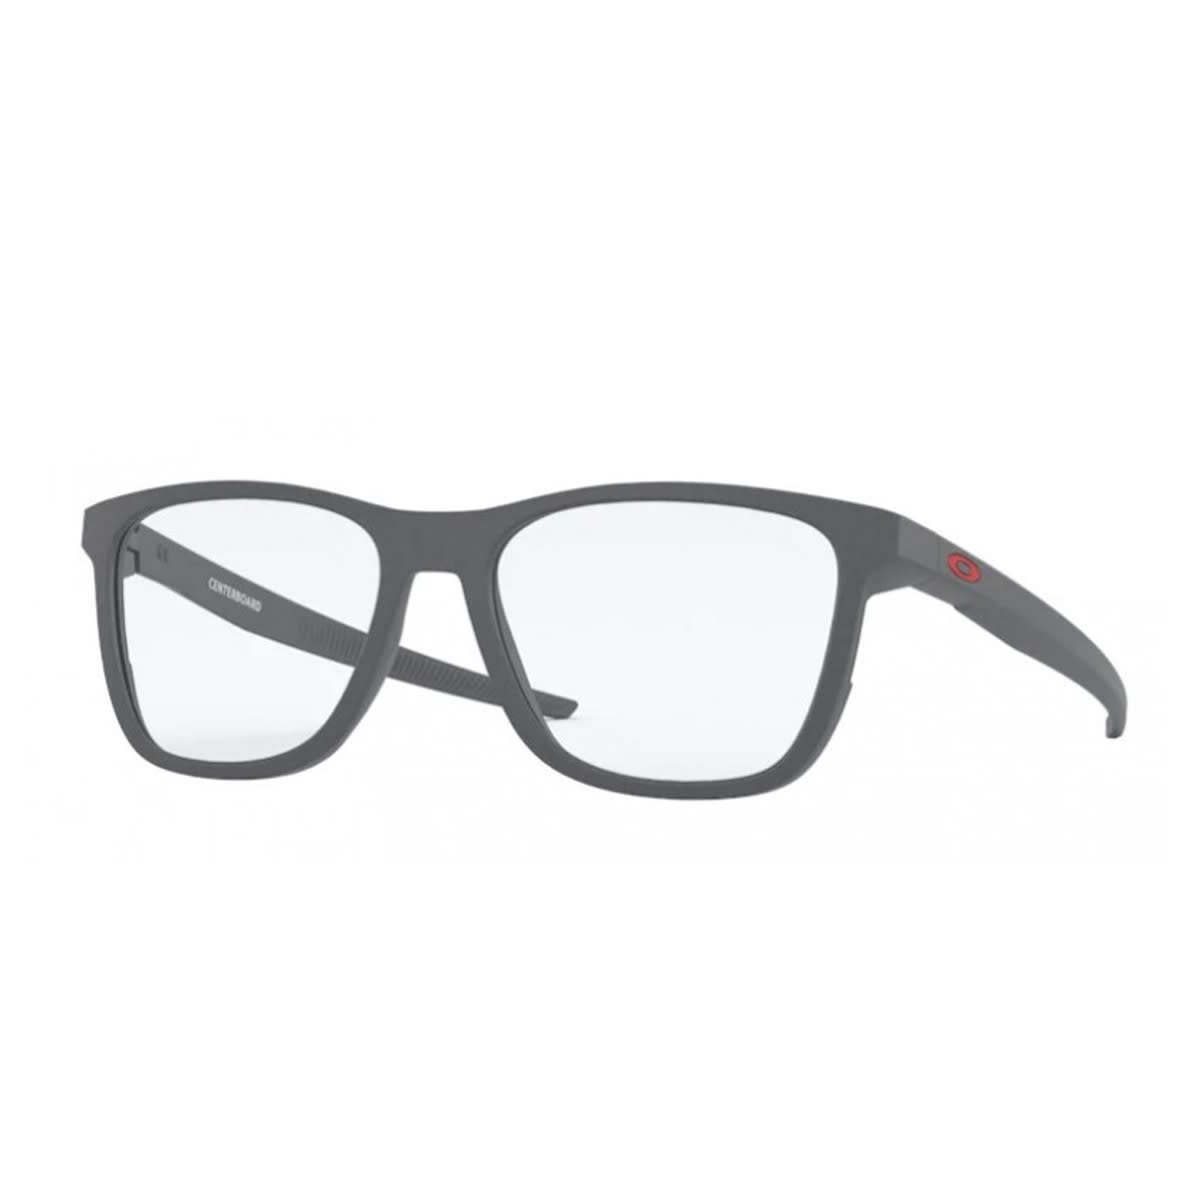 Ox8163 Glasses